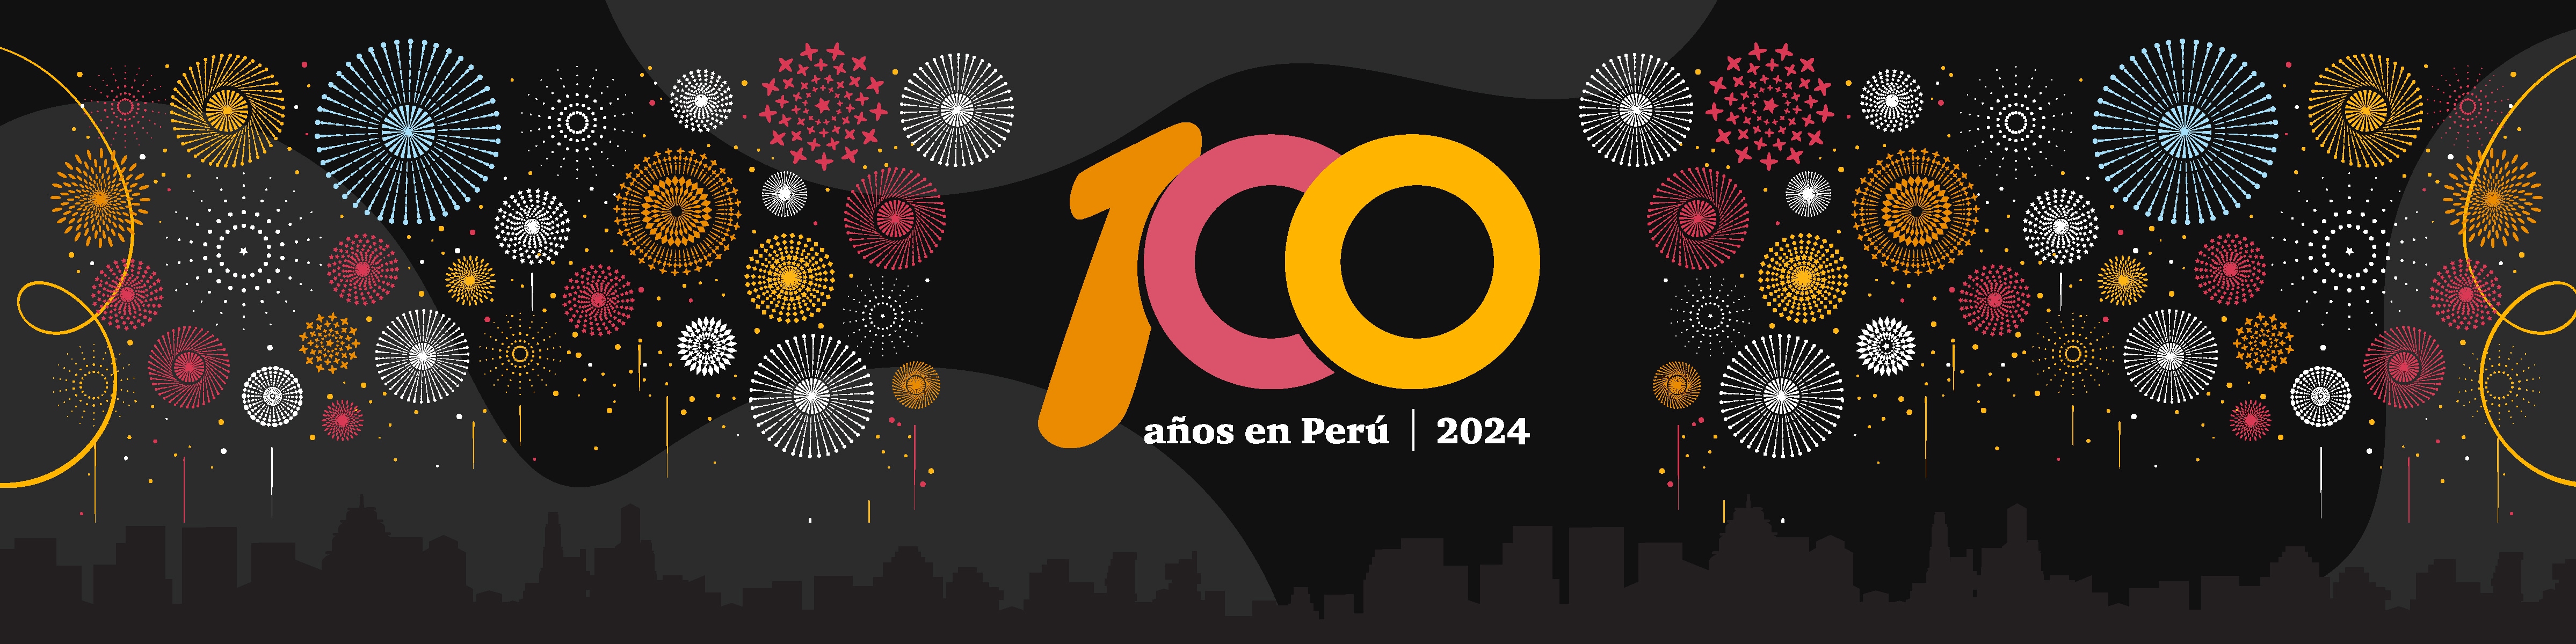 100 años PwC en Perú